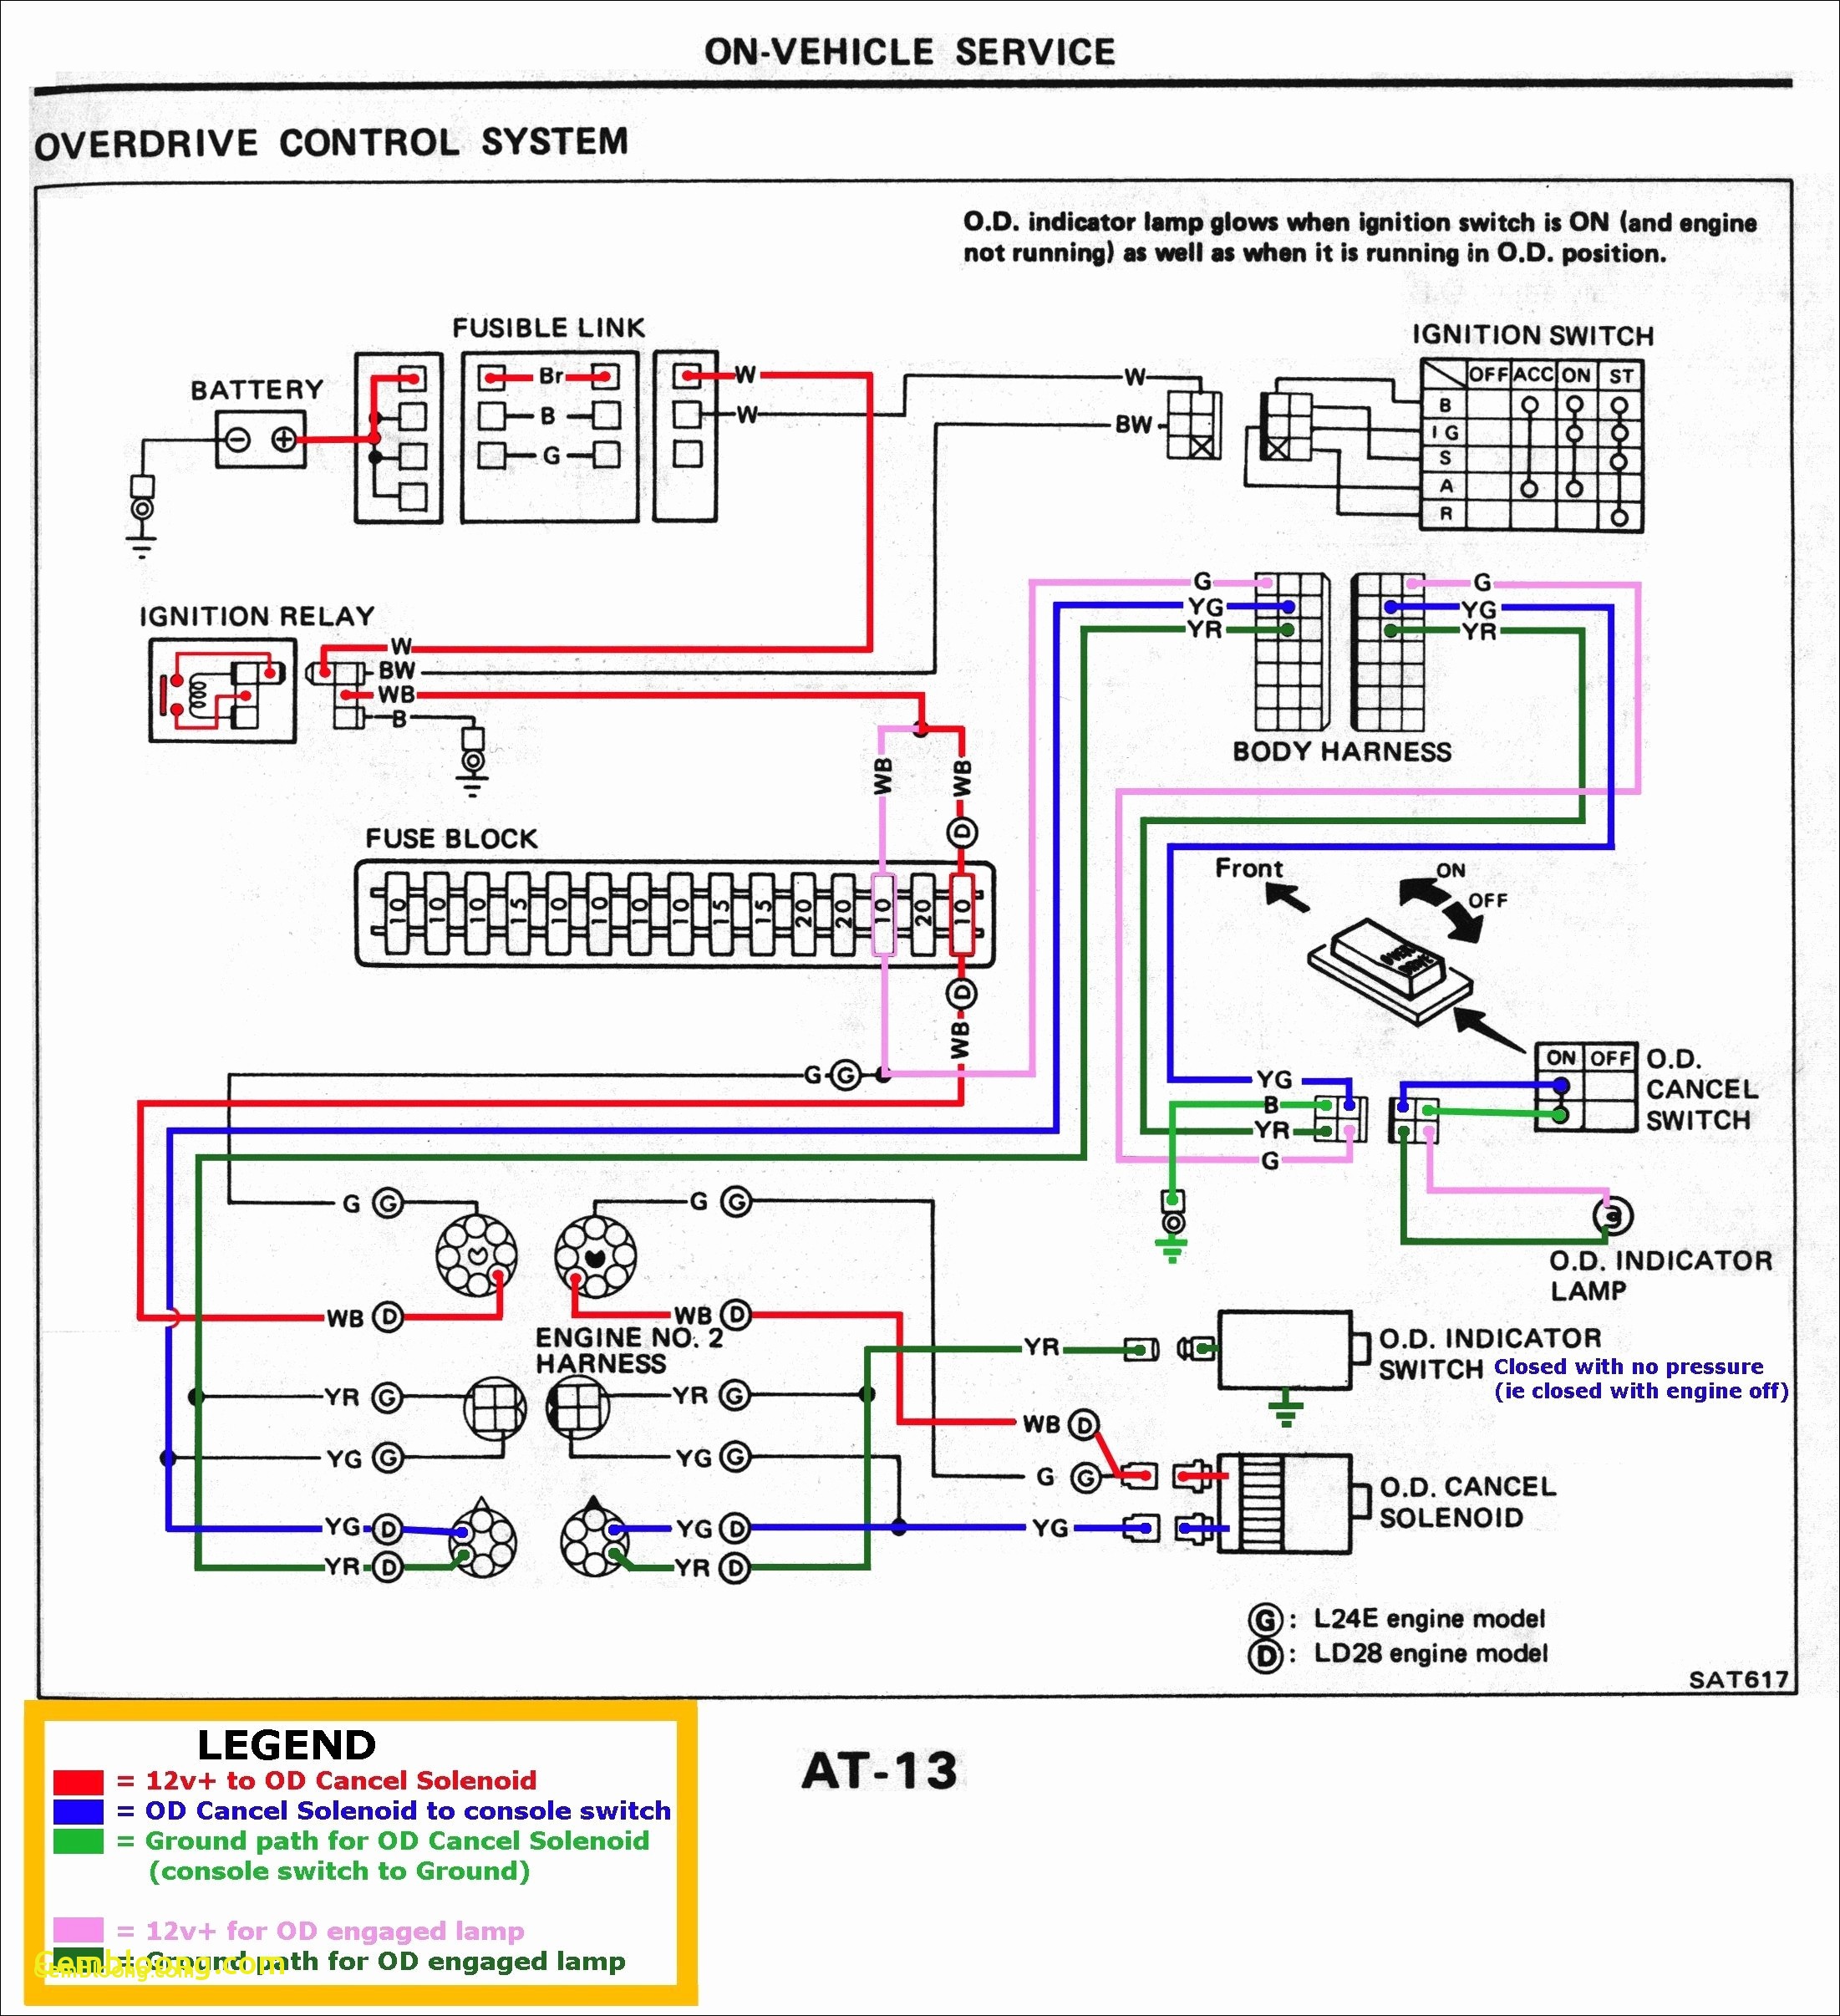 boulevard radio schematic diagram wiring diagram article reviewboulevard radio schematic diagram